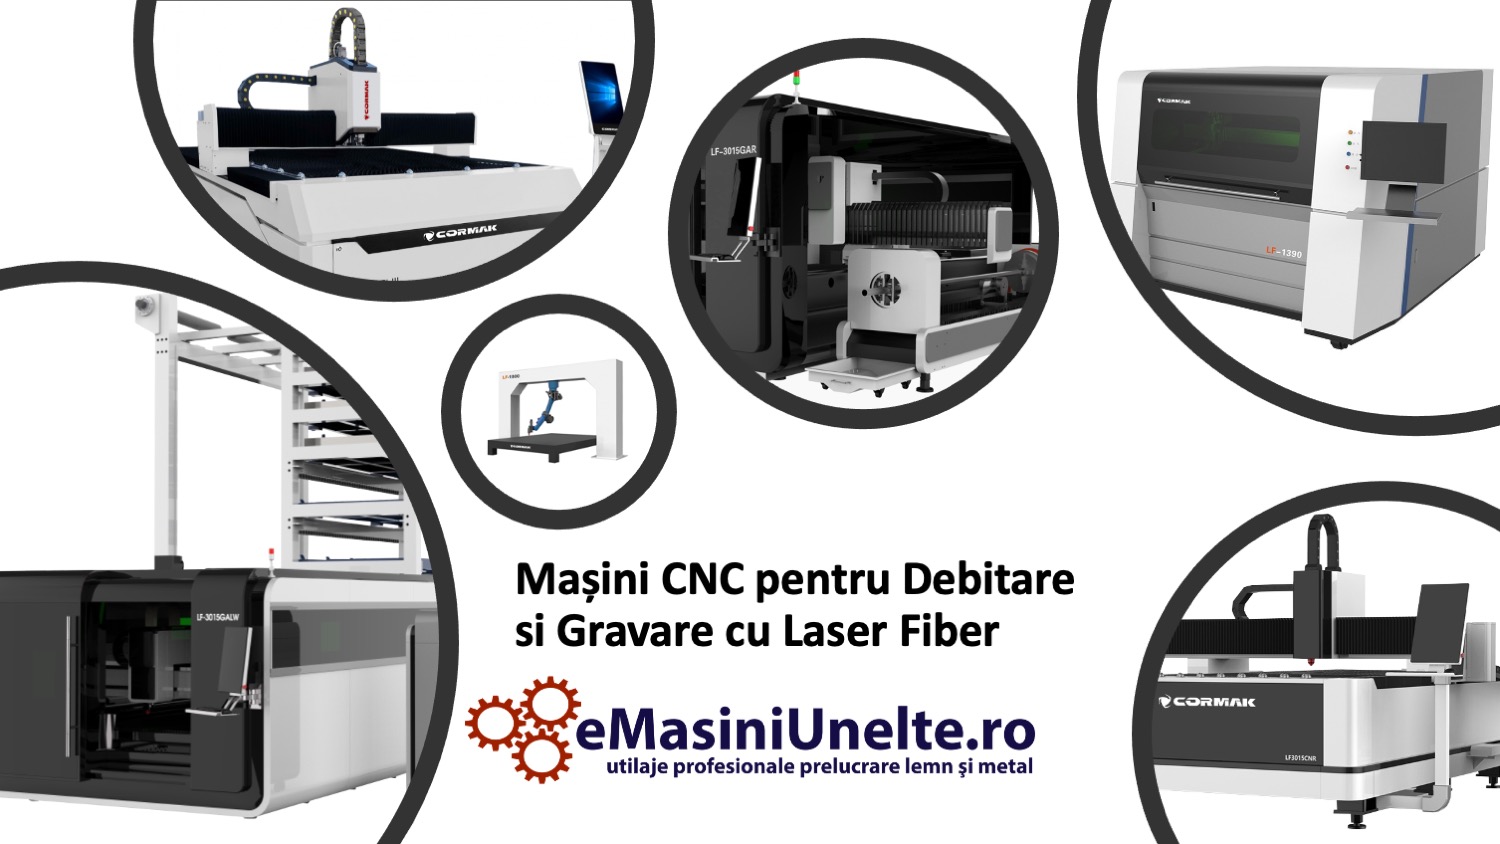 Descopera avantajele masinilor CNC pentru debitare si gravare cu laser fiber